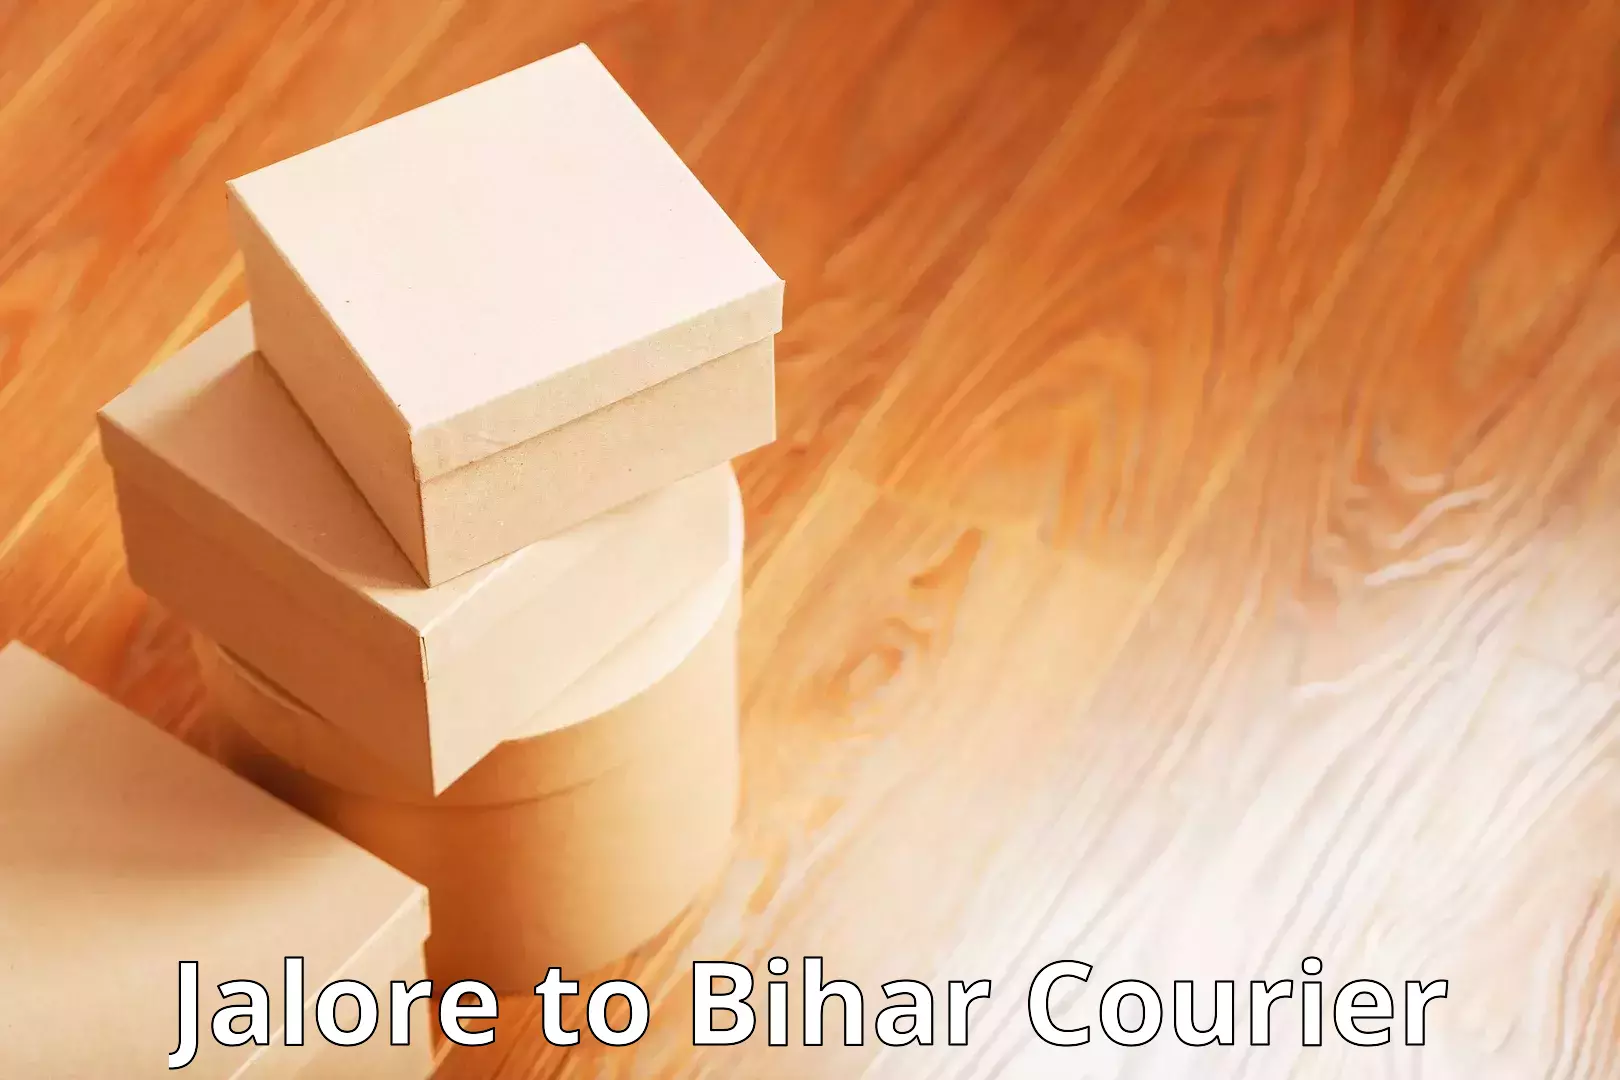 Fast parcel dispatch Jalore to Bihar